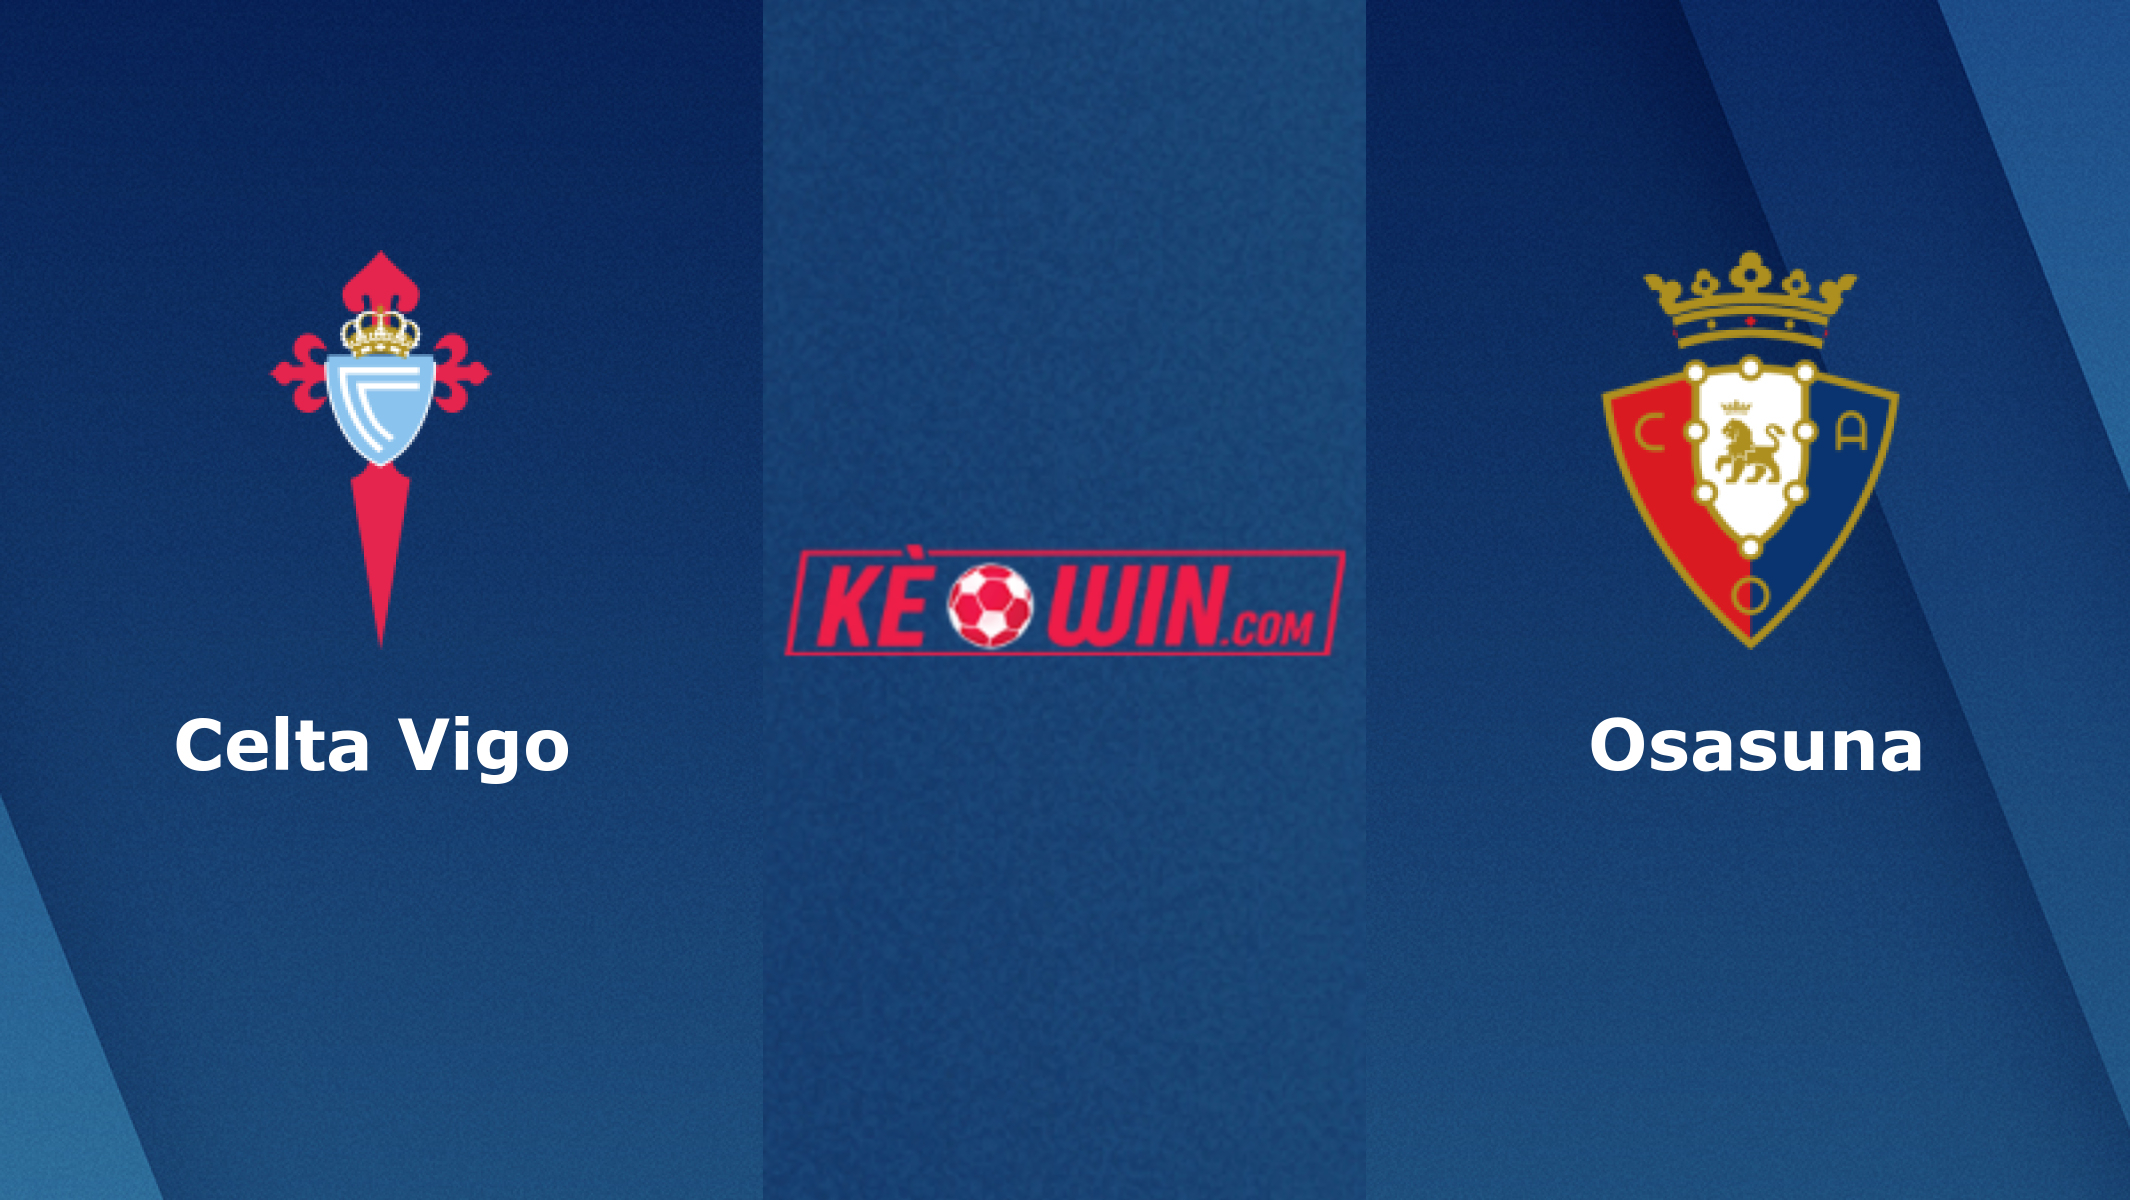 Celta Vigo vs Osasuna – Soi kèo bóng đá 01h00 20/01/2022 – VĐQG Tây Ban Nha